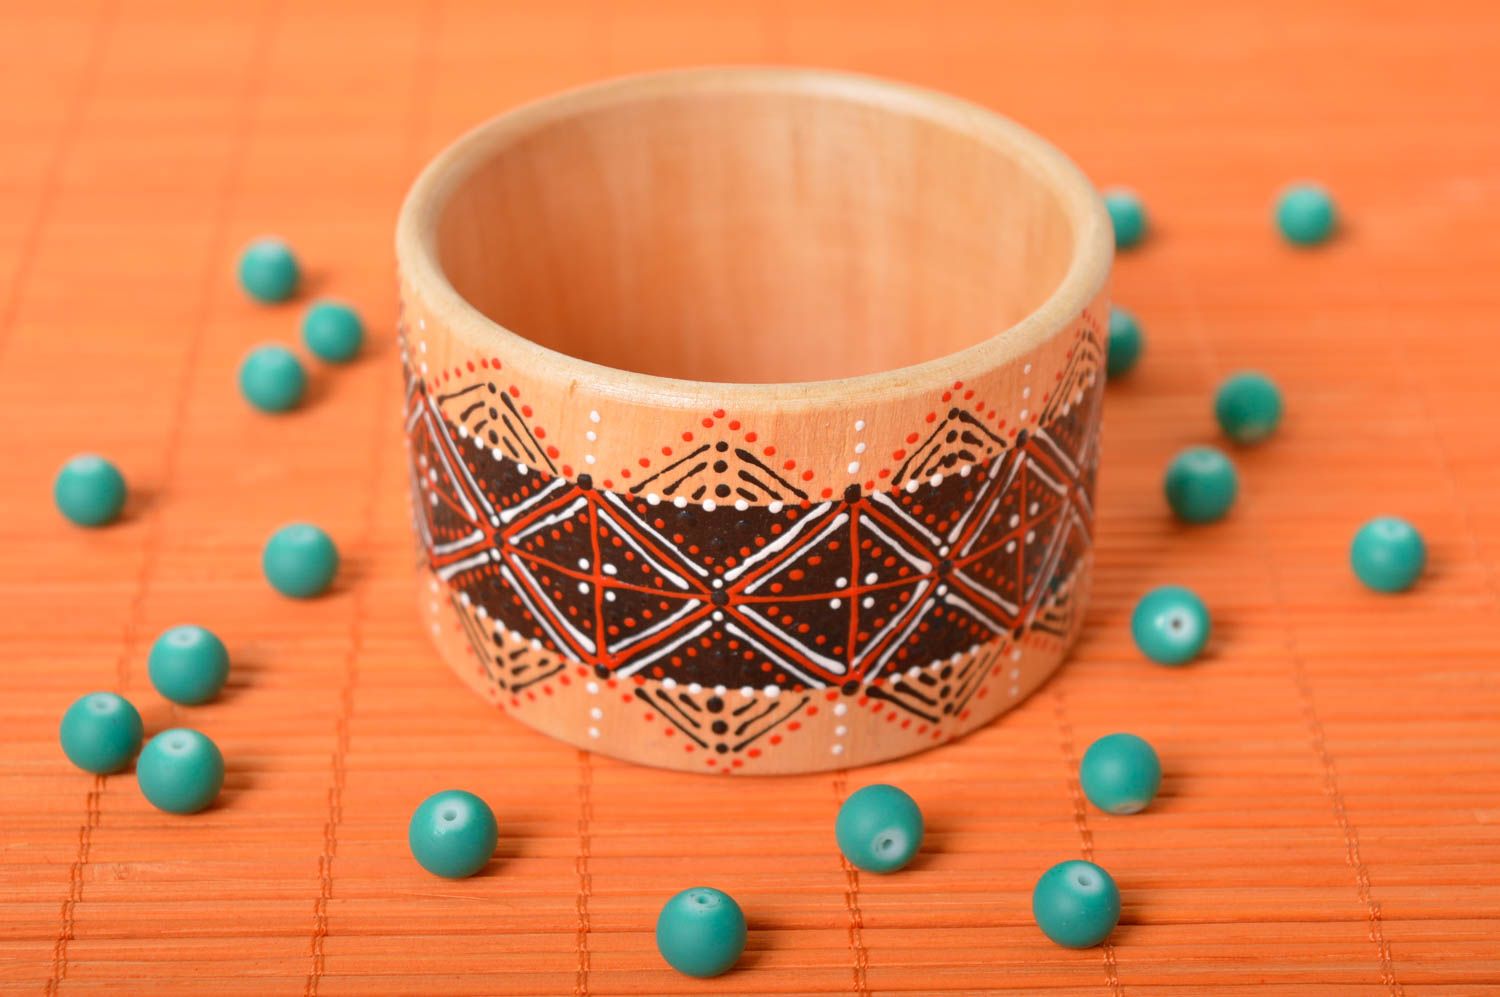 Handmade beautiful wooden bracelet cute jewelry bracelet in ethnic style photo 2